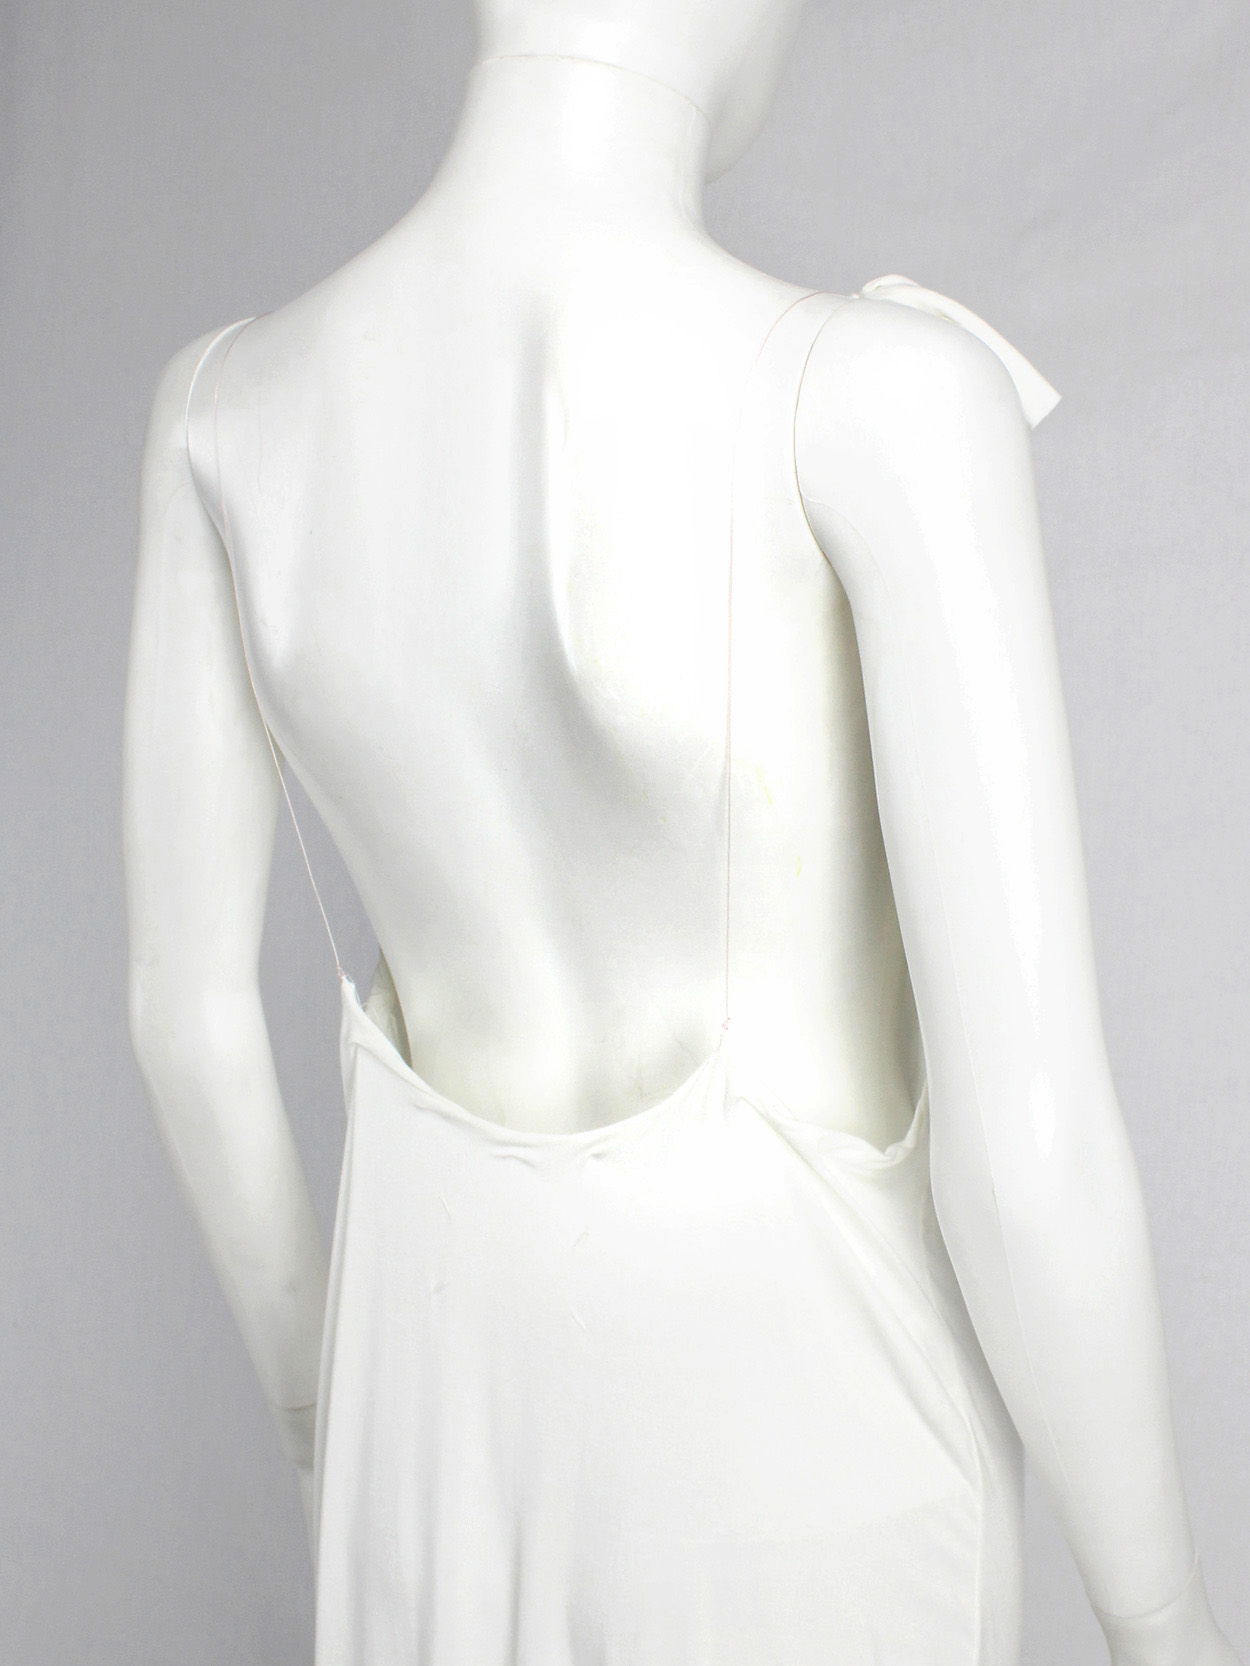 vaniitas vintage Maison Martin Margiela white floating dress with invisible straps spring 2005 6561